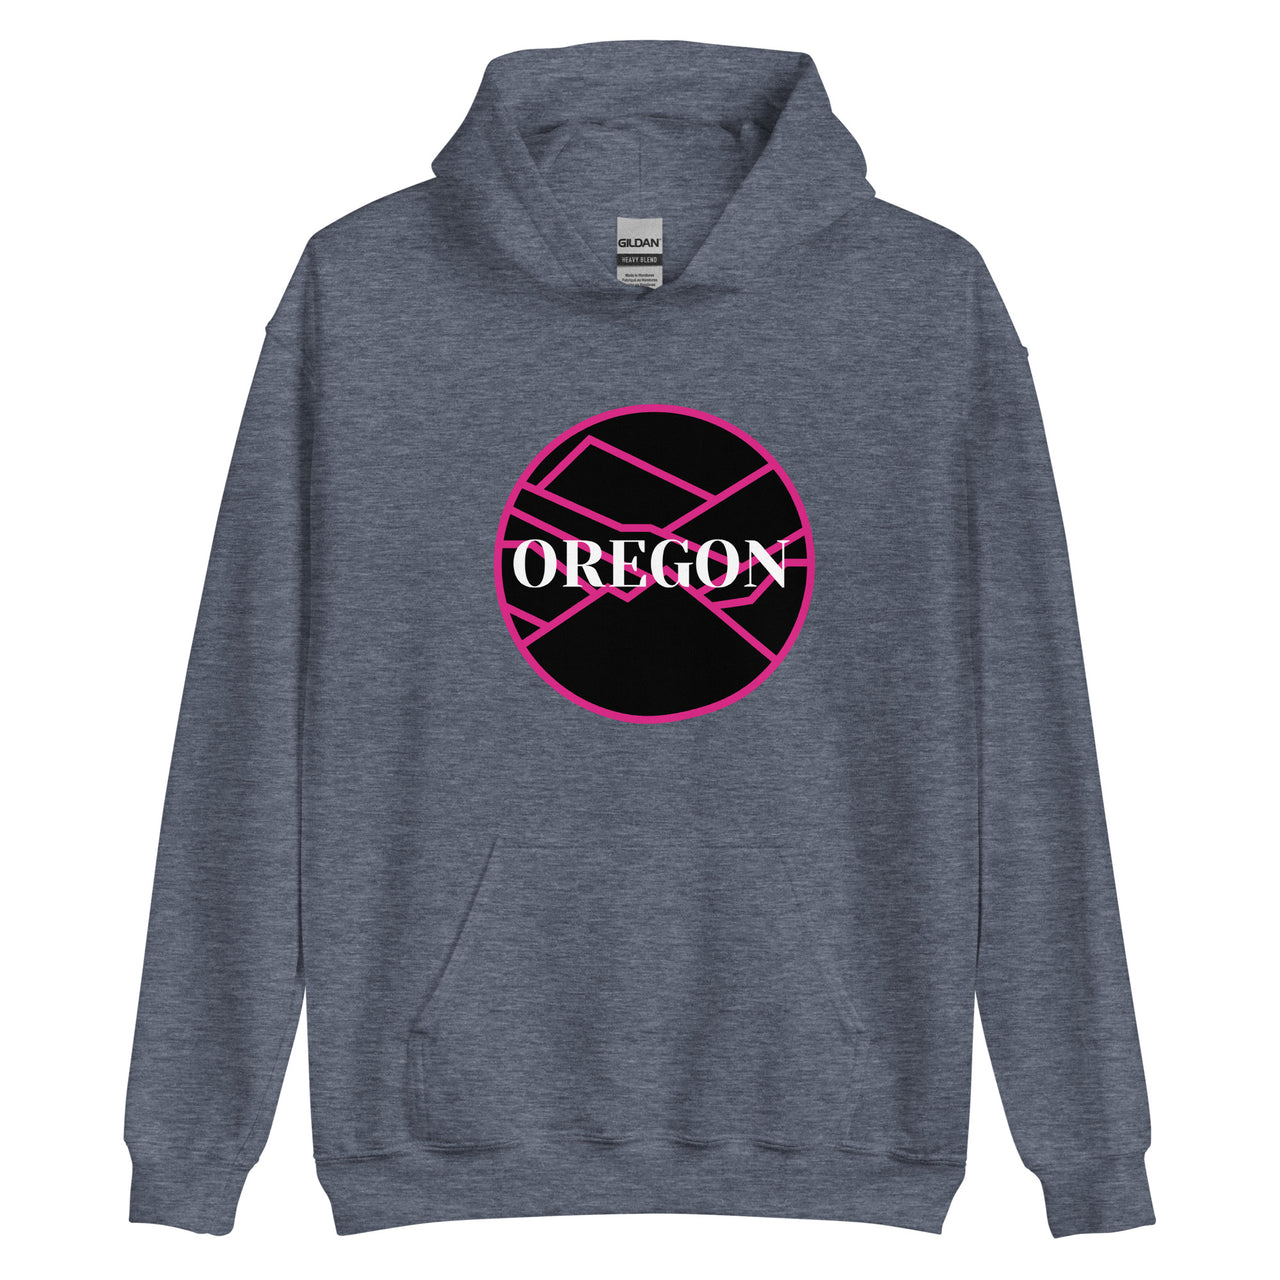 OREGON - Pink/Black - Unisex Hoodie